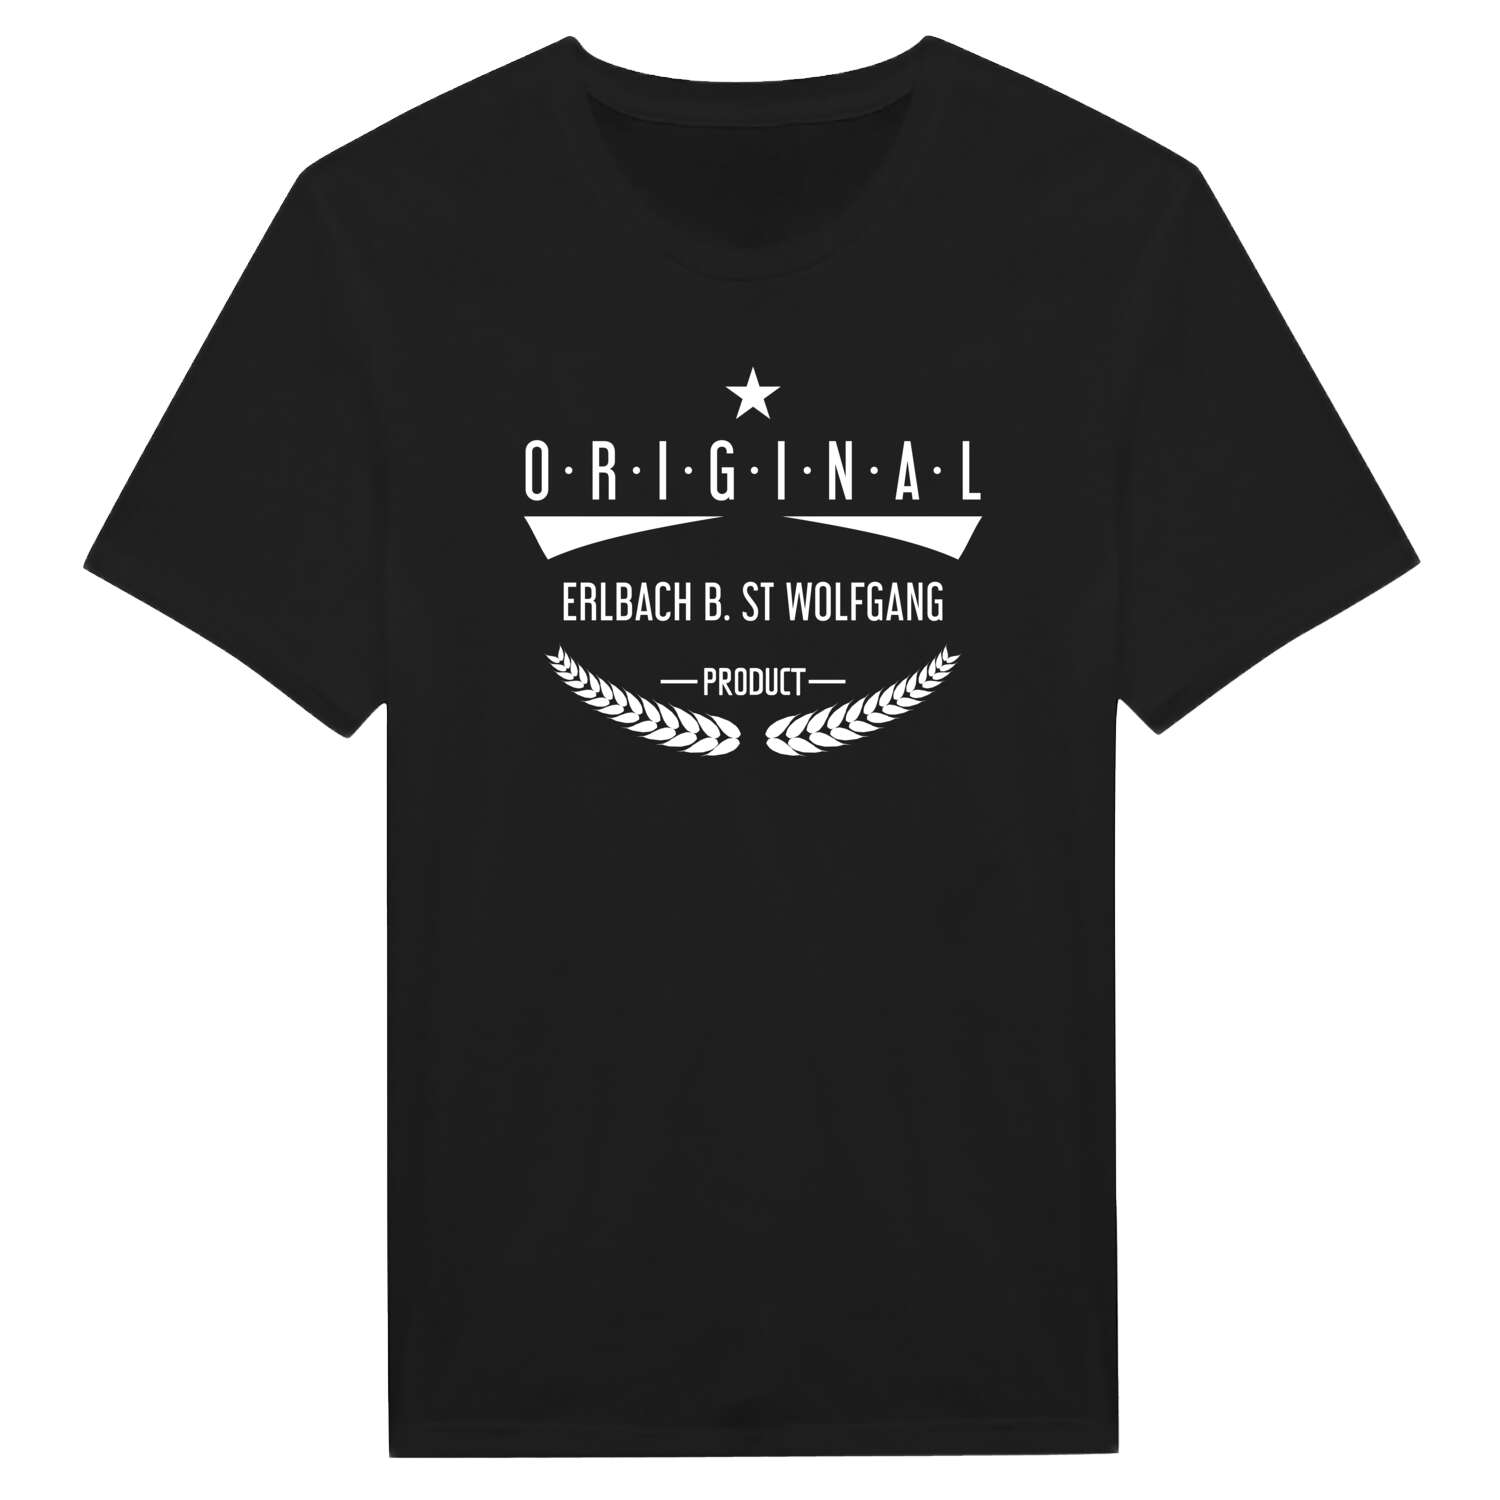 Erlbach b. St Wolfgang T-Shirt »Original Product«